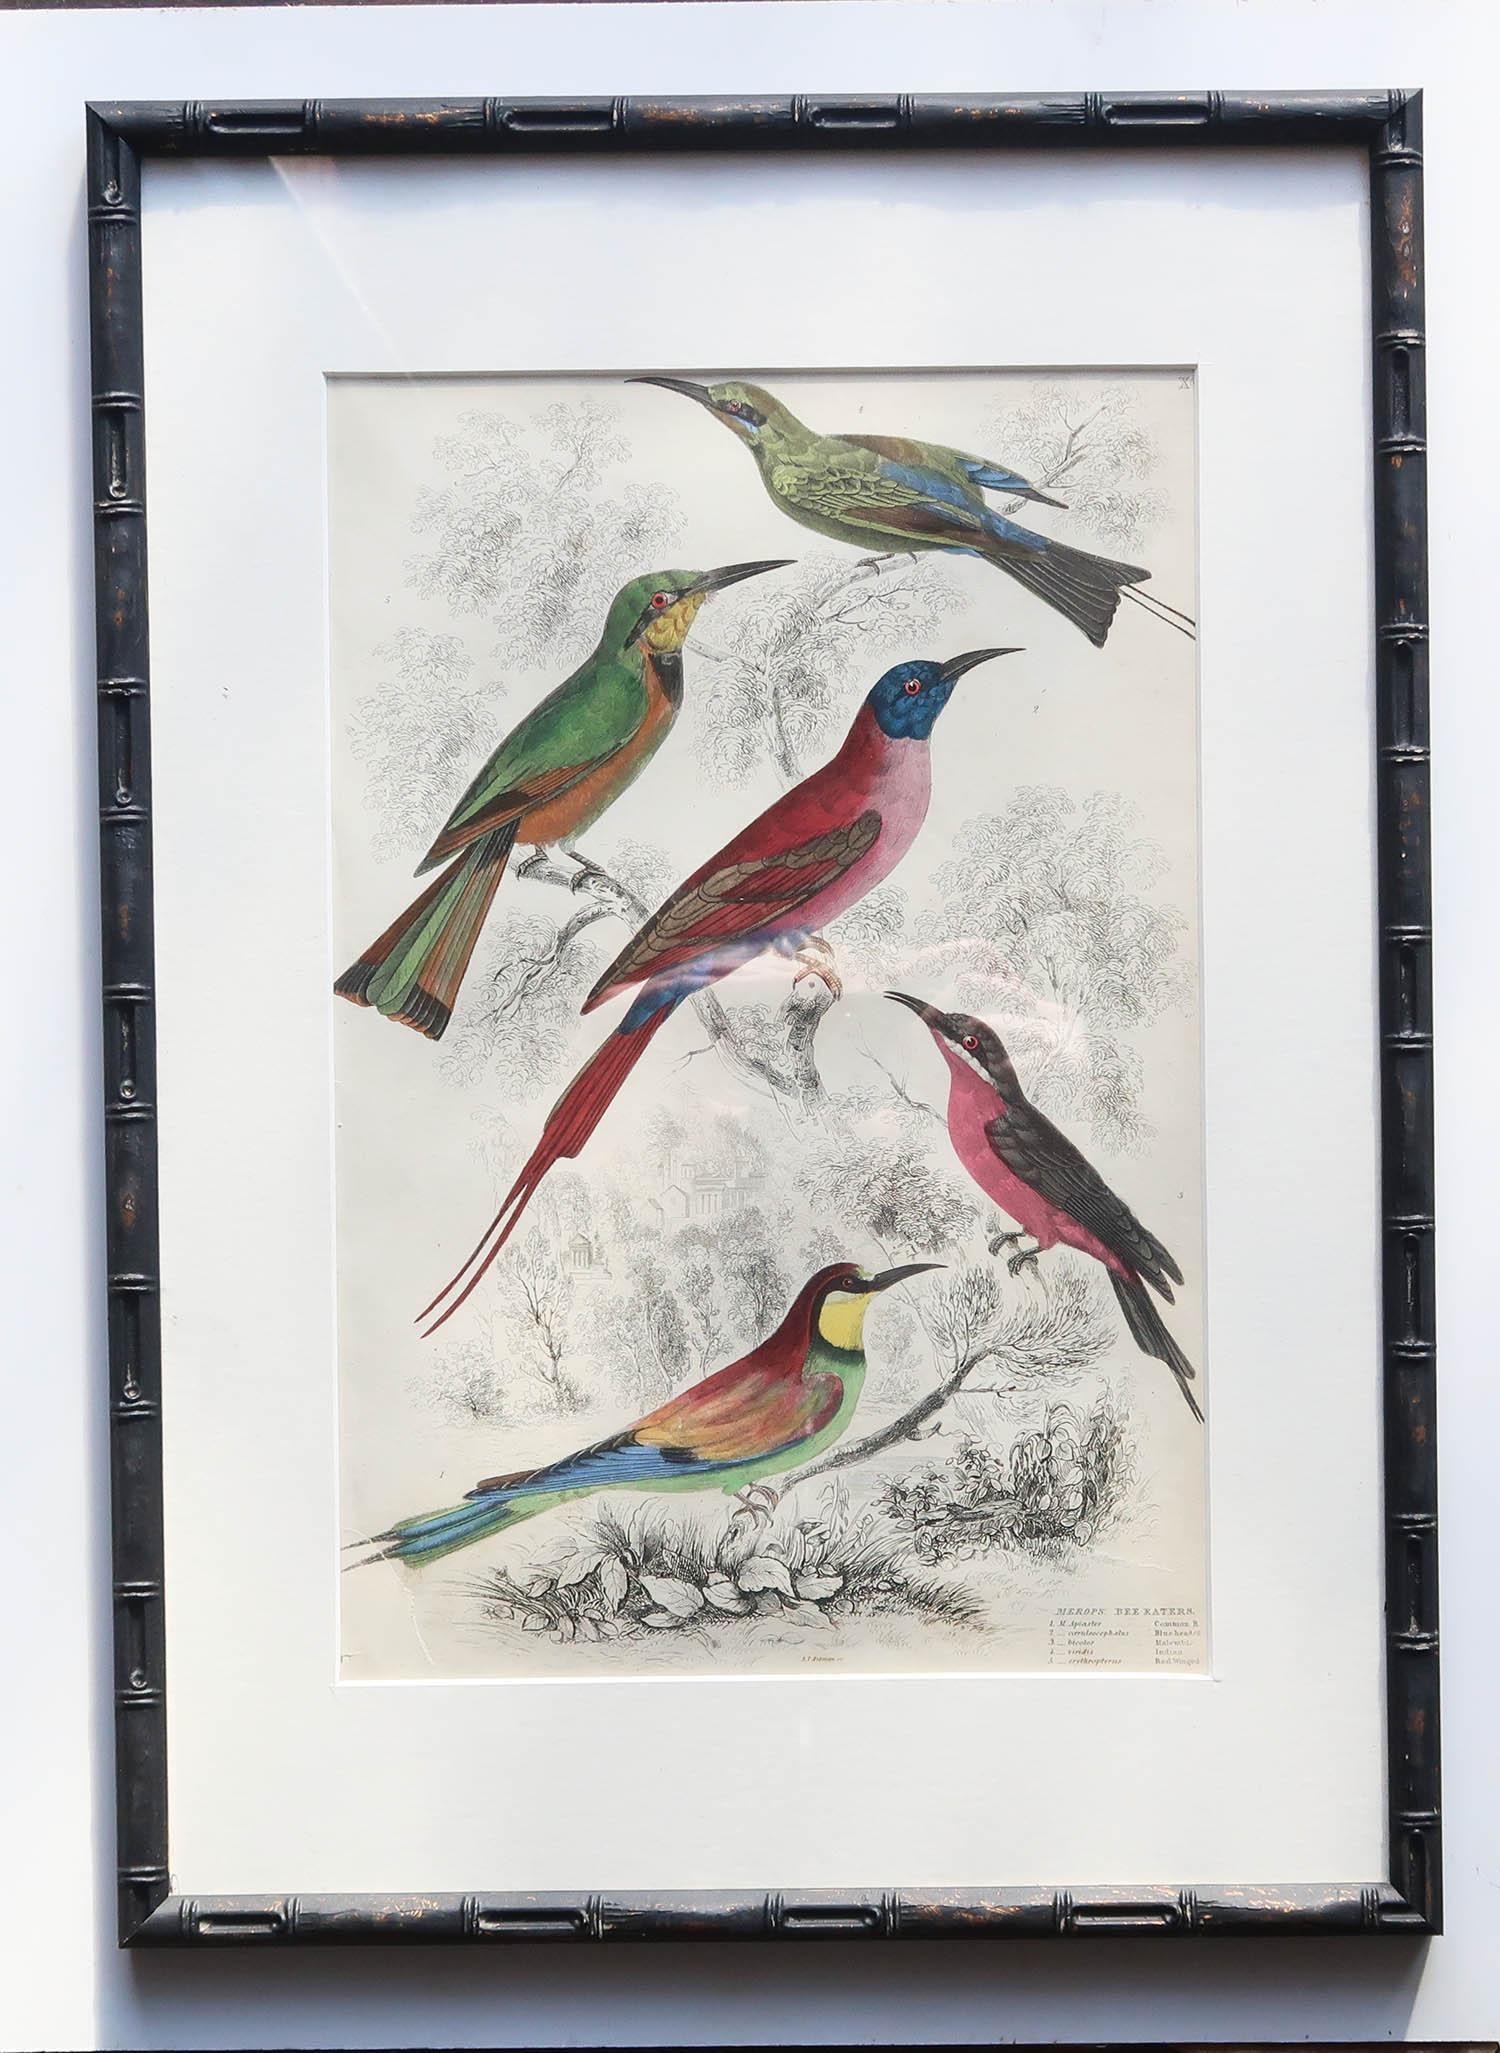 Merveilleux ensemble de 15 gravures anciennes d'oiseaux dans des couleurs exquises et lumineuses.

Présentés dans nos propres cadres en faux bambou ébonisé fabriqués sur mesure.

Lithographies d'après les dessins originaux du capitaine Brown.